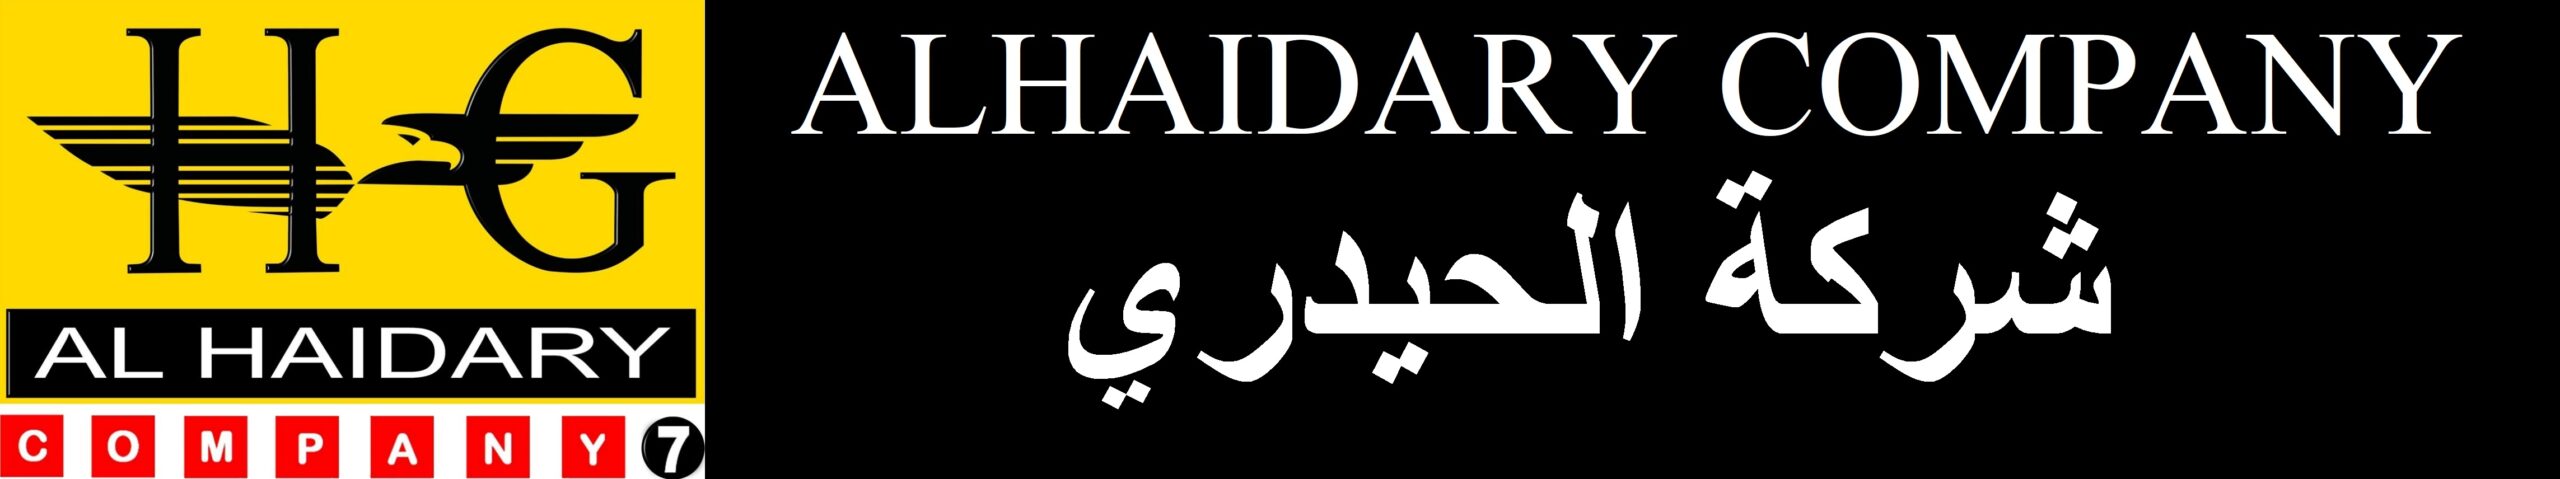 Alhaidary Company